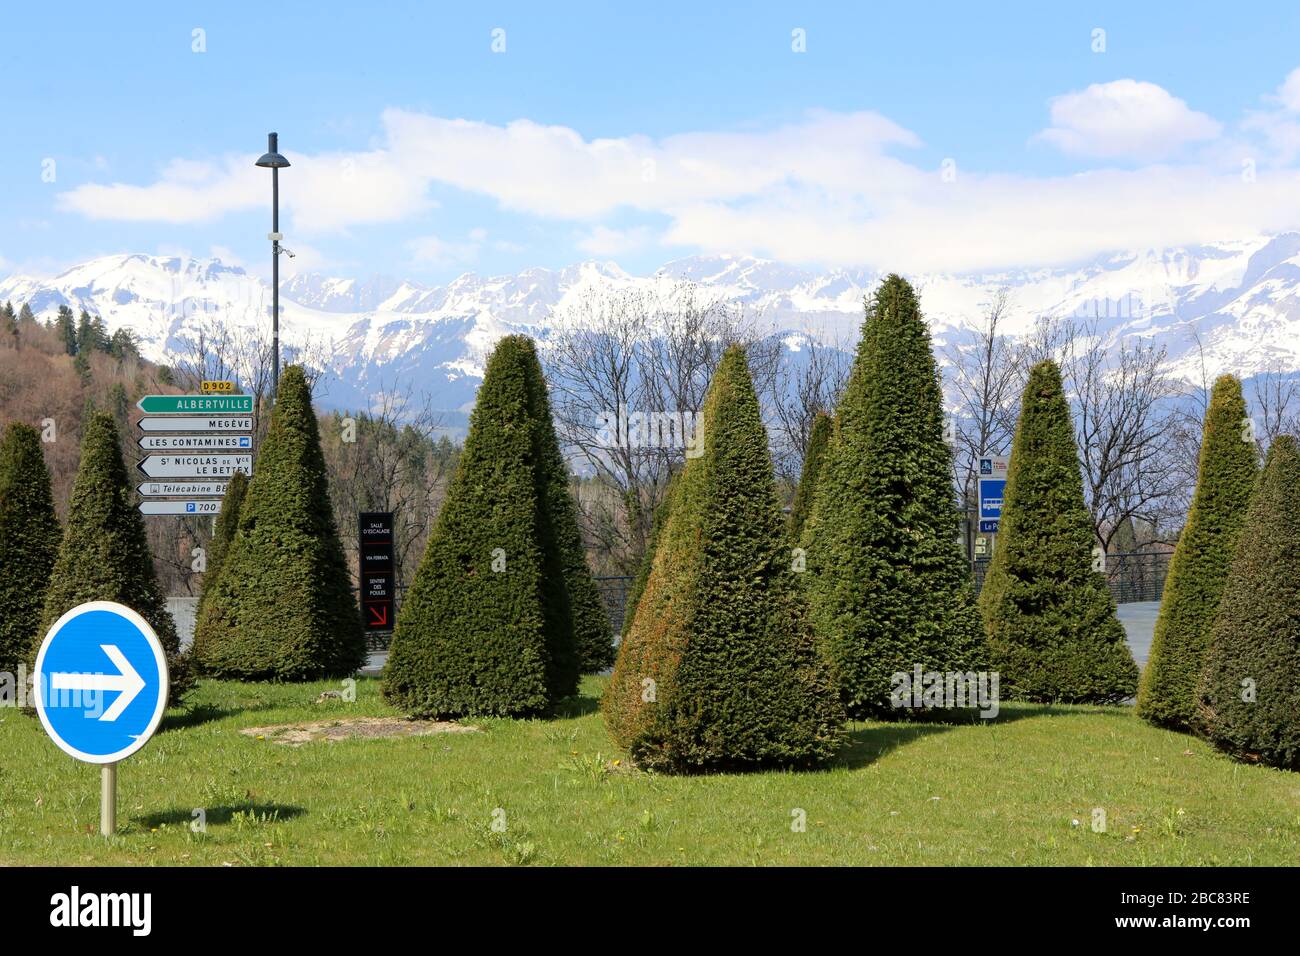 Rond-Point. Aménagement. Sapins. Saint-Gervais-les-Bains. Haute-Savoie. France. Stock Photo